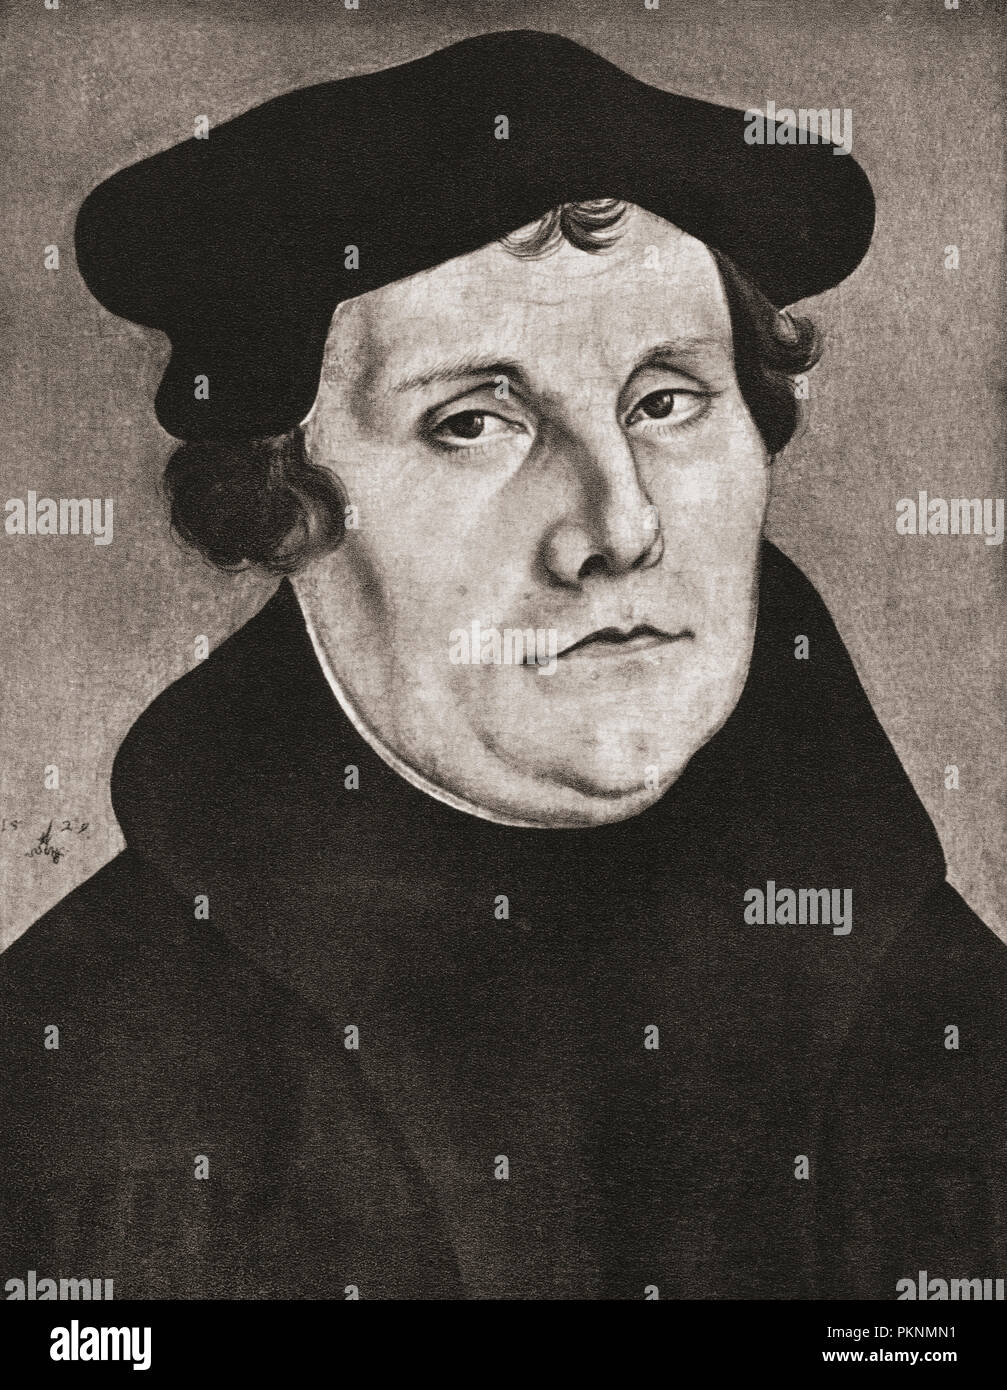 Martín Lutero, 1483 - 1546. Profesor de teología alemán, compositor, sacerdote, monje, y una figura seminal en la Reforma Protestante. Foto de stock